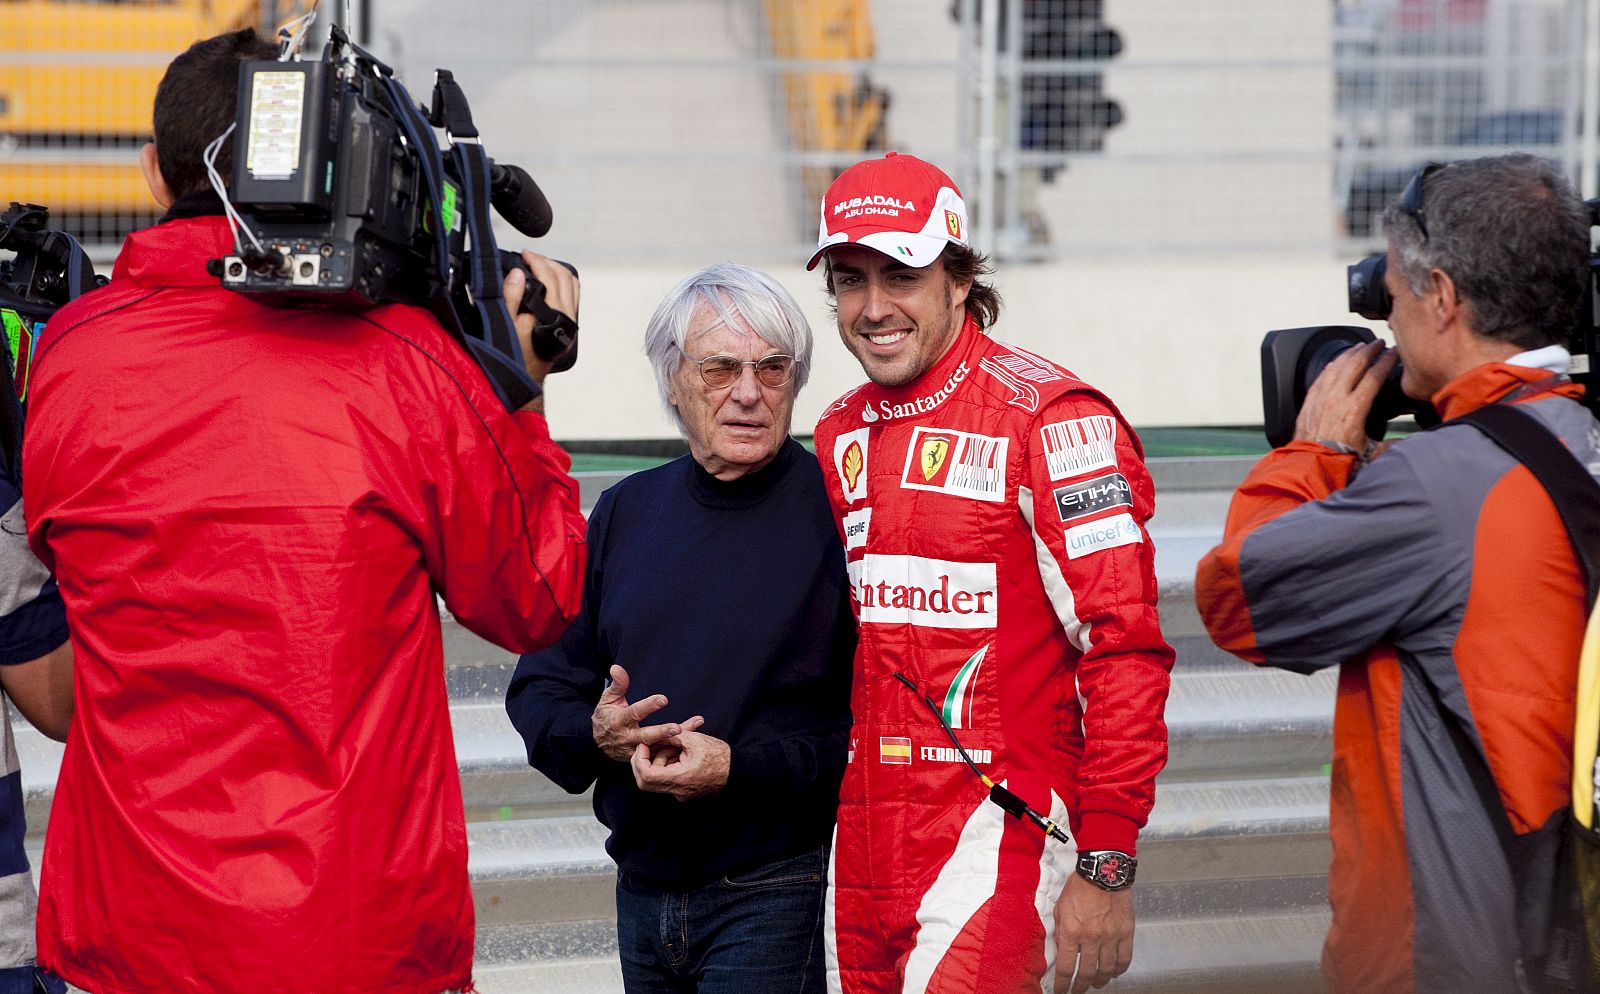 El piloto español, Fernando Alonso (Ferrari), posa junto al patrón de la Fórmula Uno, Bernie Ecclestone en el circuito de Corea.